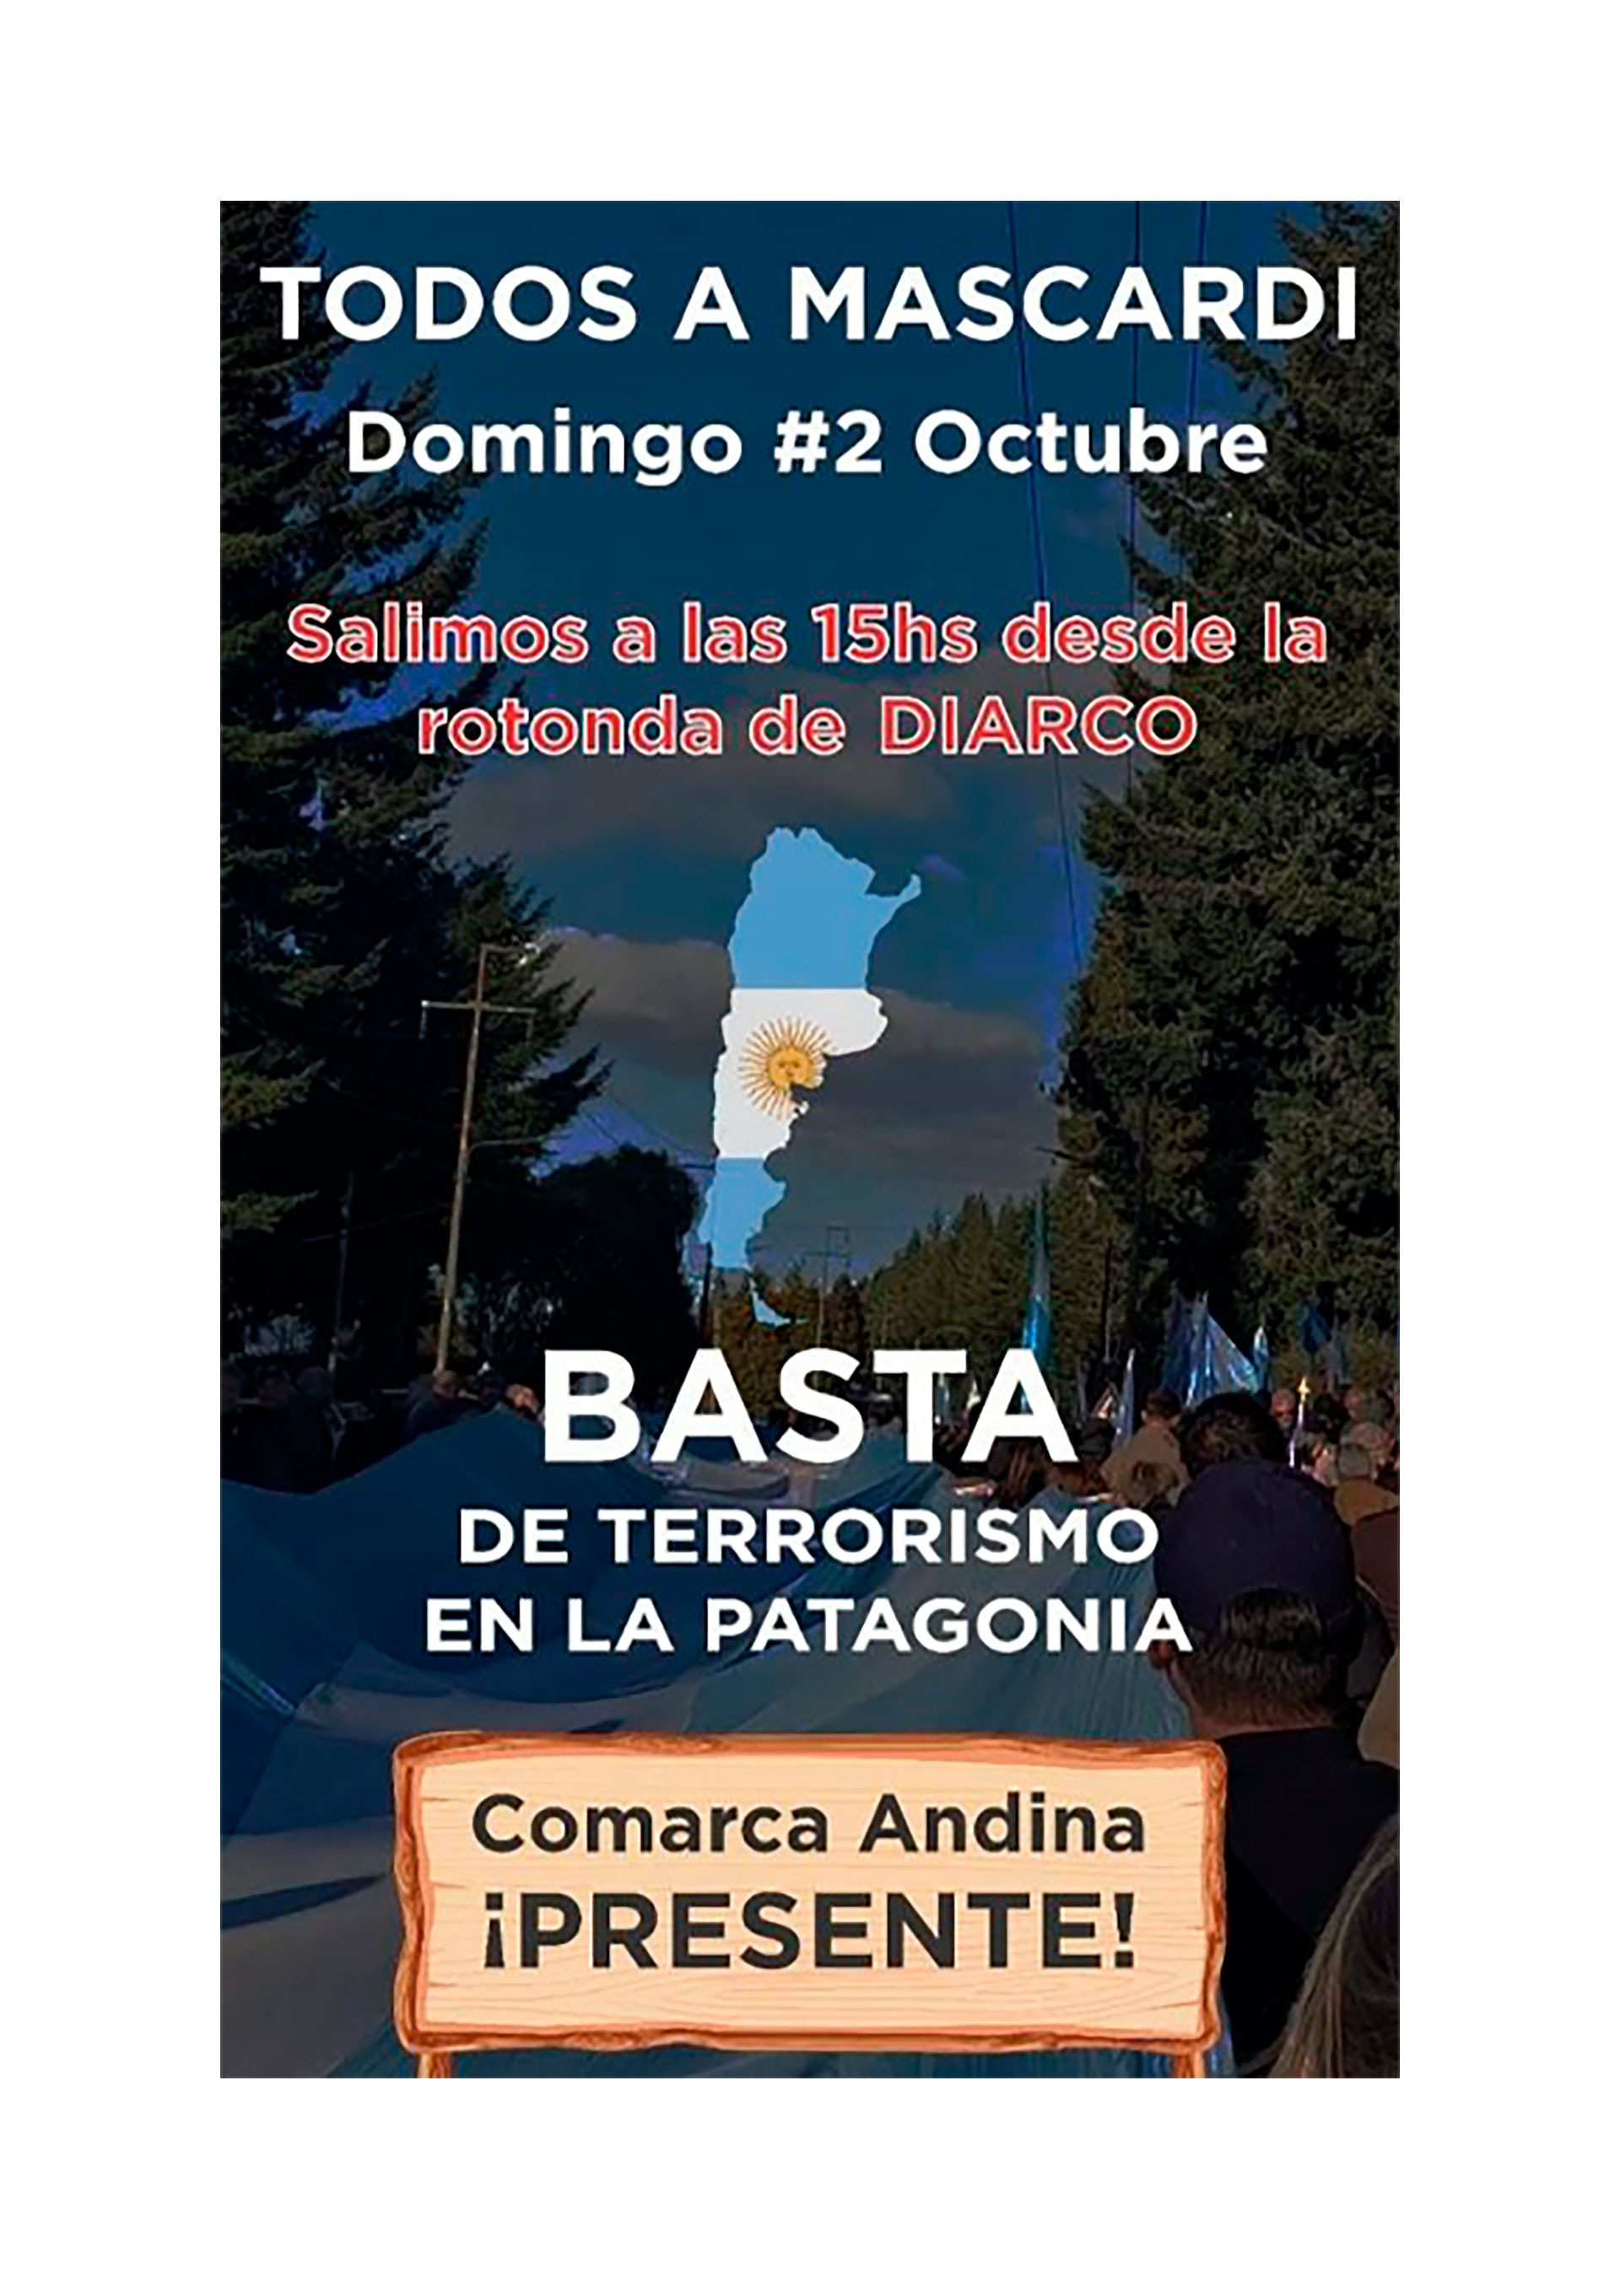 Vecinos de Bariloche y alrededores marcharán a Villa Mascardi para repudiar la ocupación de terrenos mapuche. 